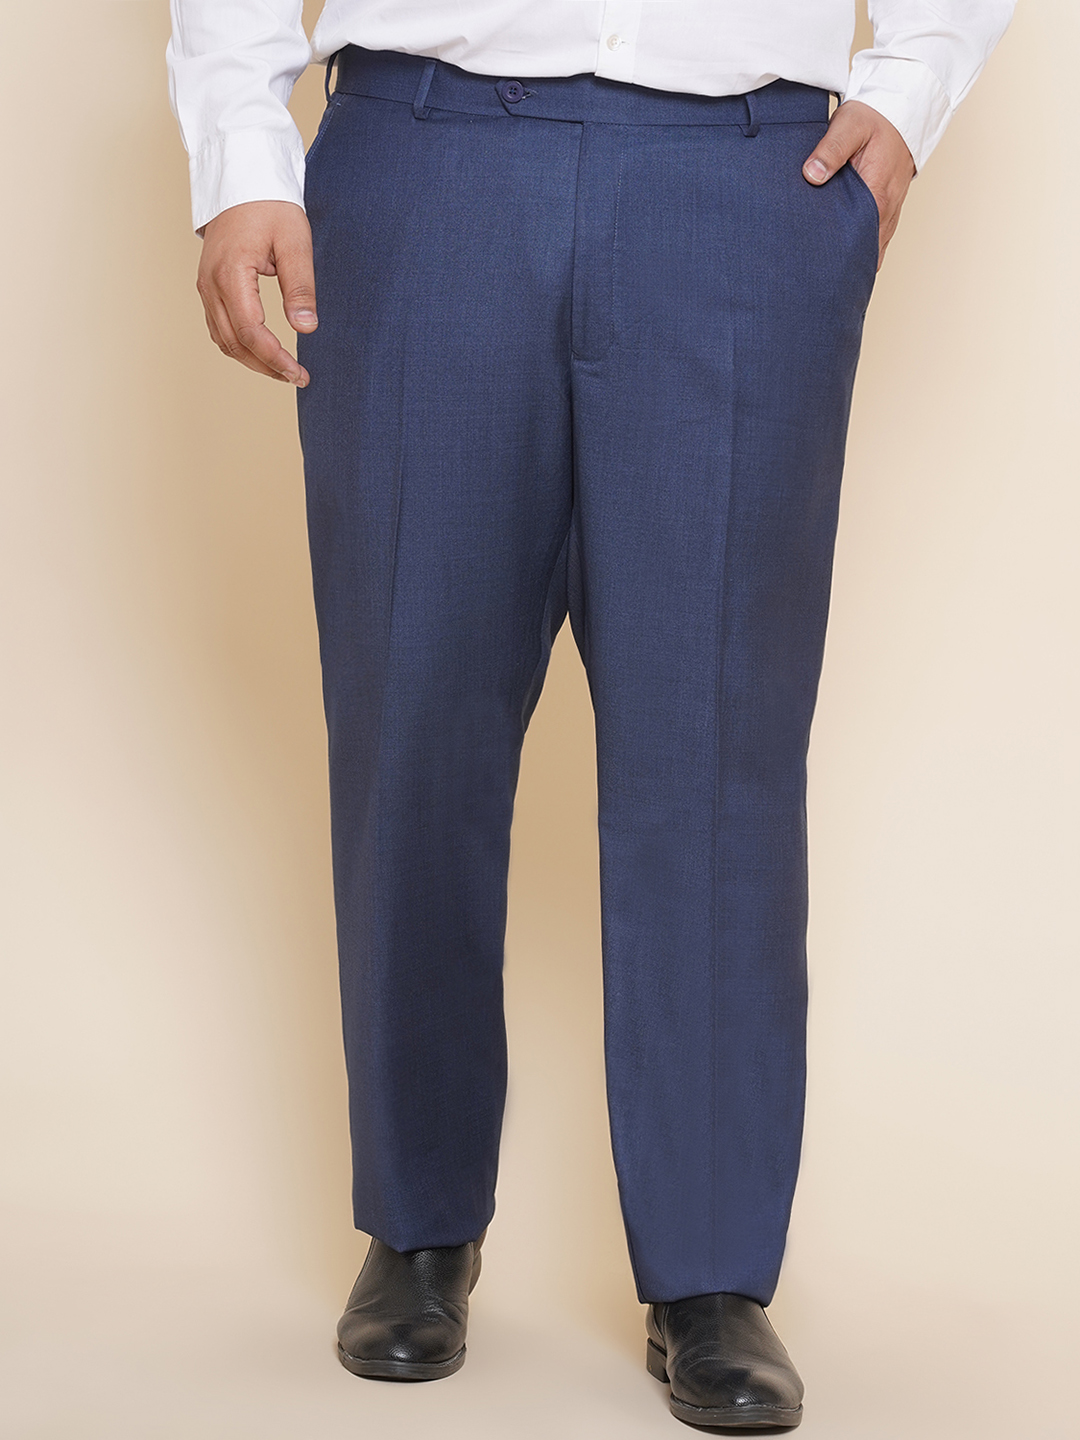 bottomwear/trousers/JPTR22010H/jptr22010h-1.jpg